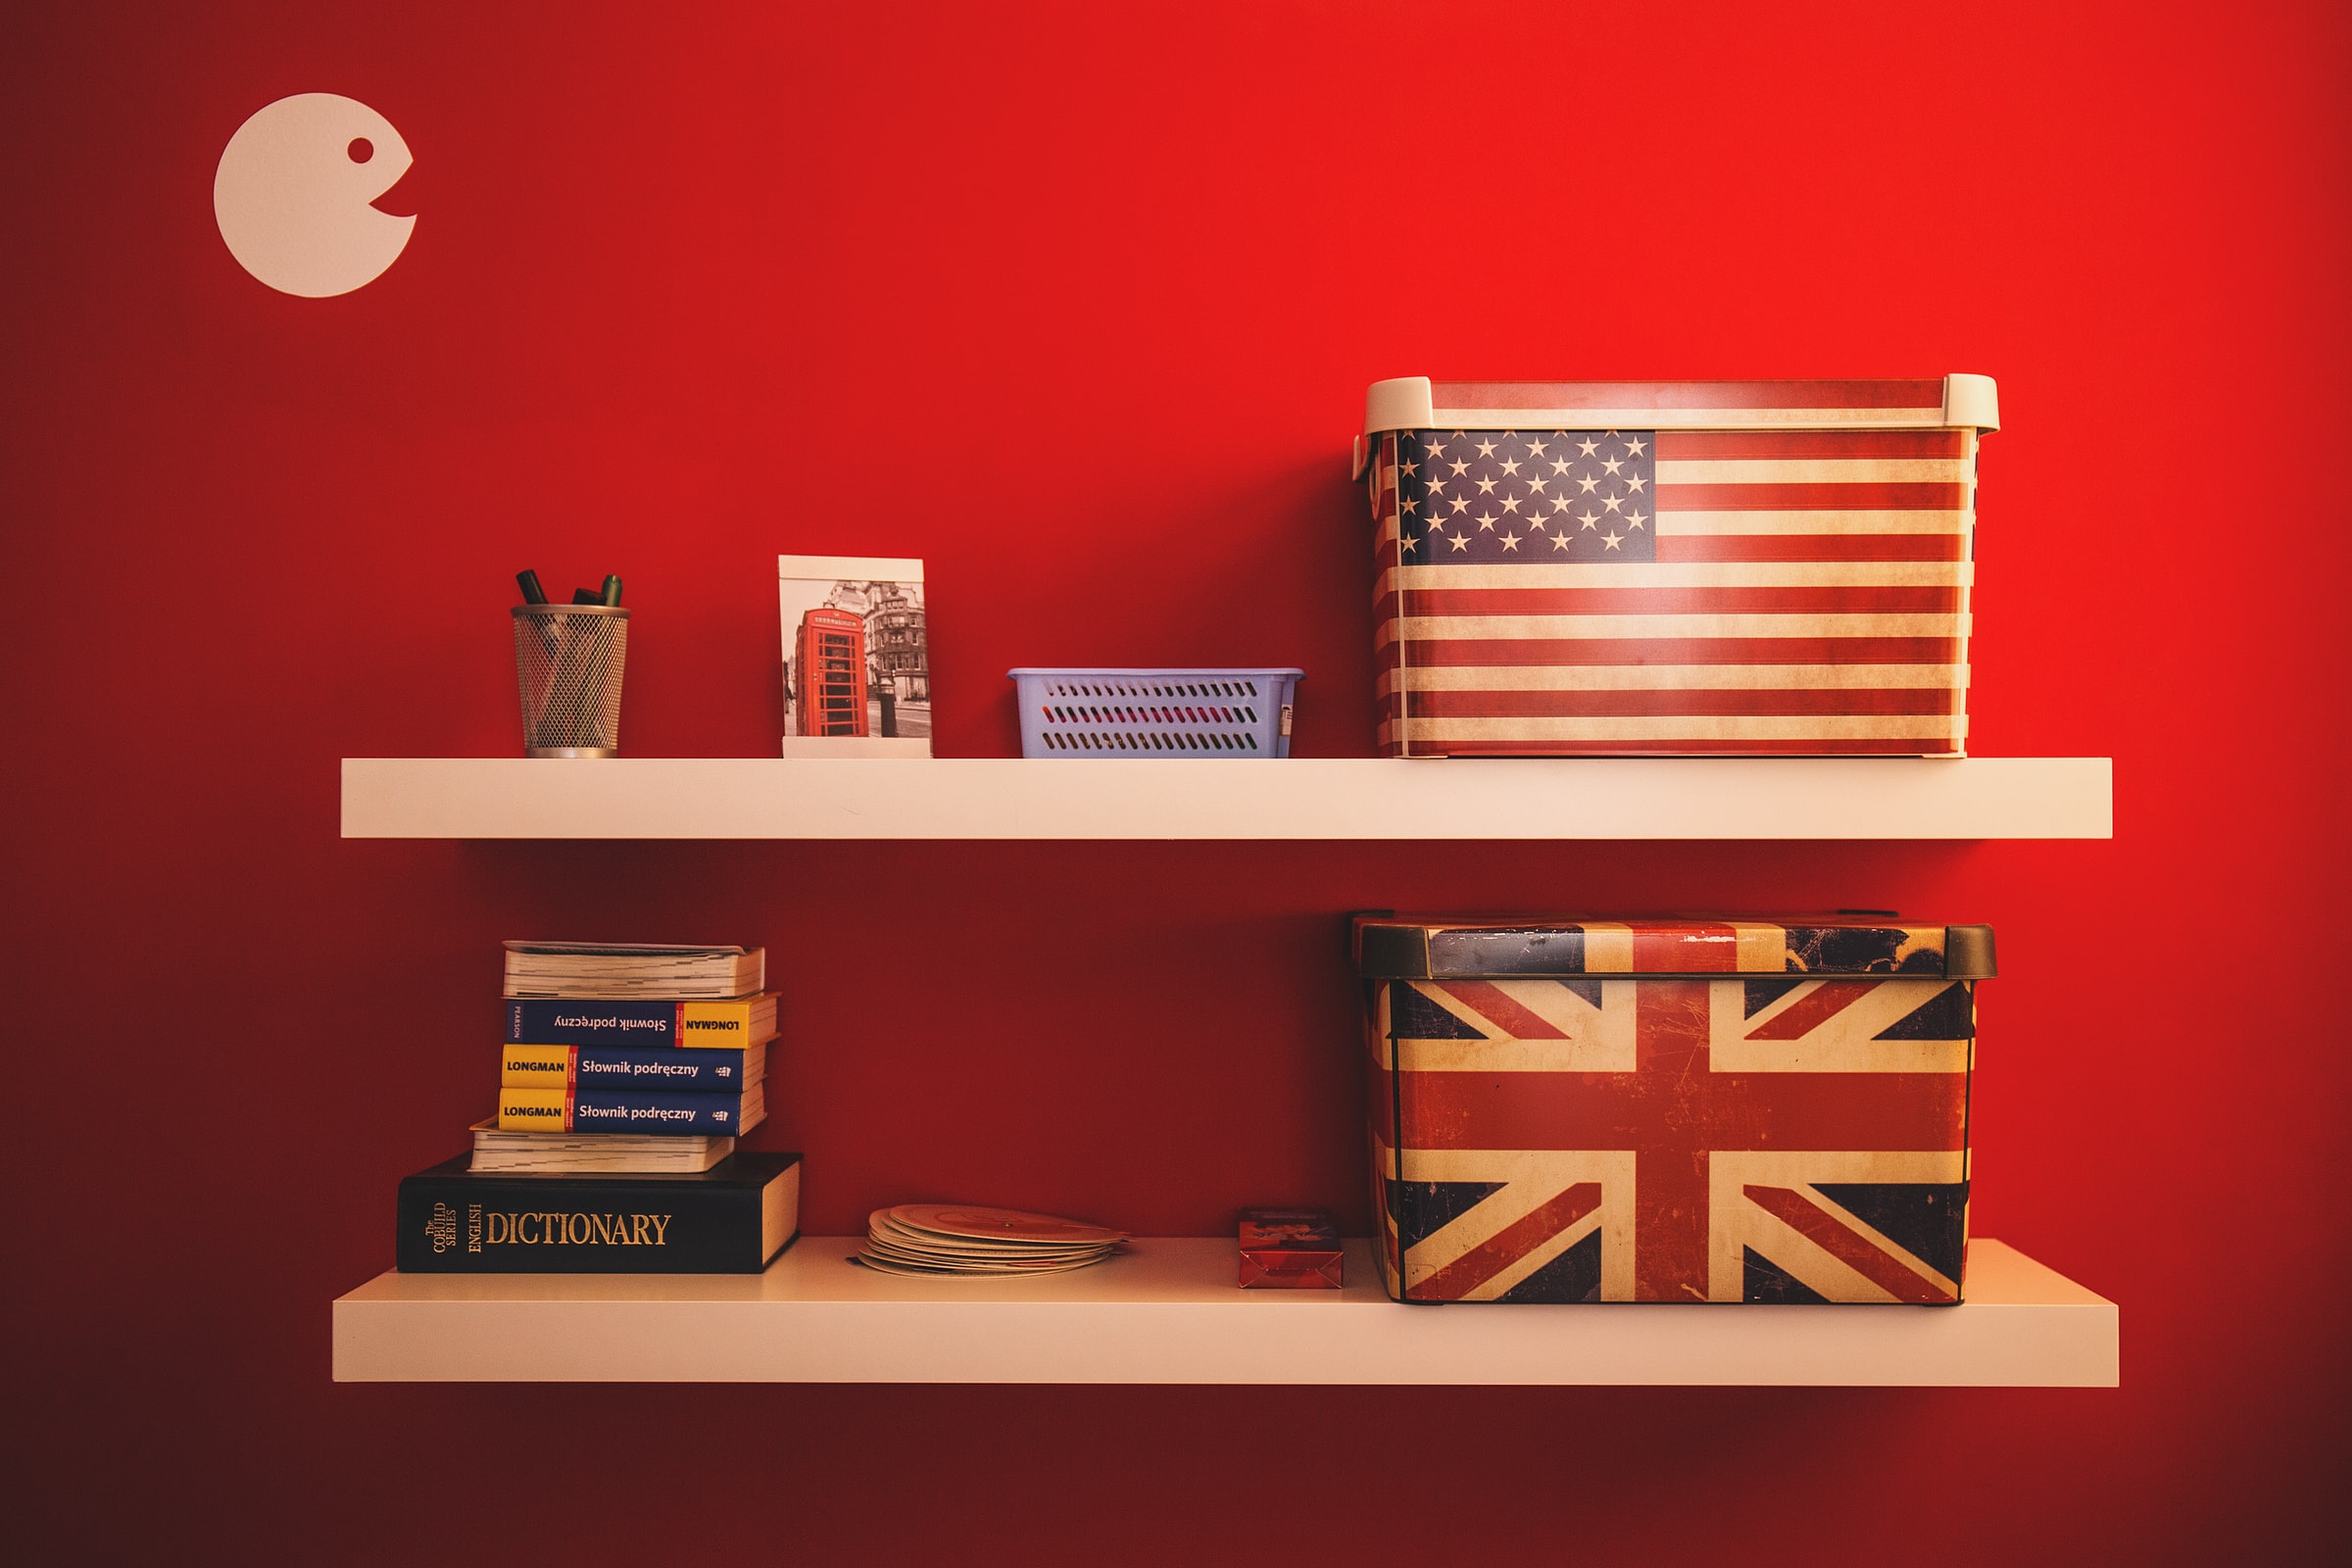 Imagem para o artigo sobre as diferenças entre o inglês britânico e o americano